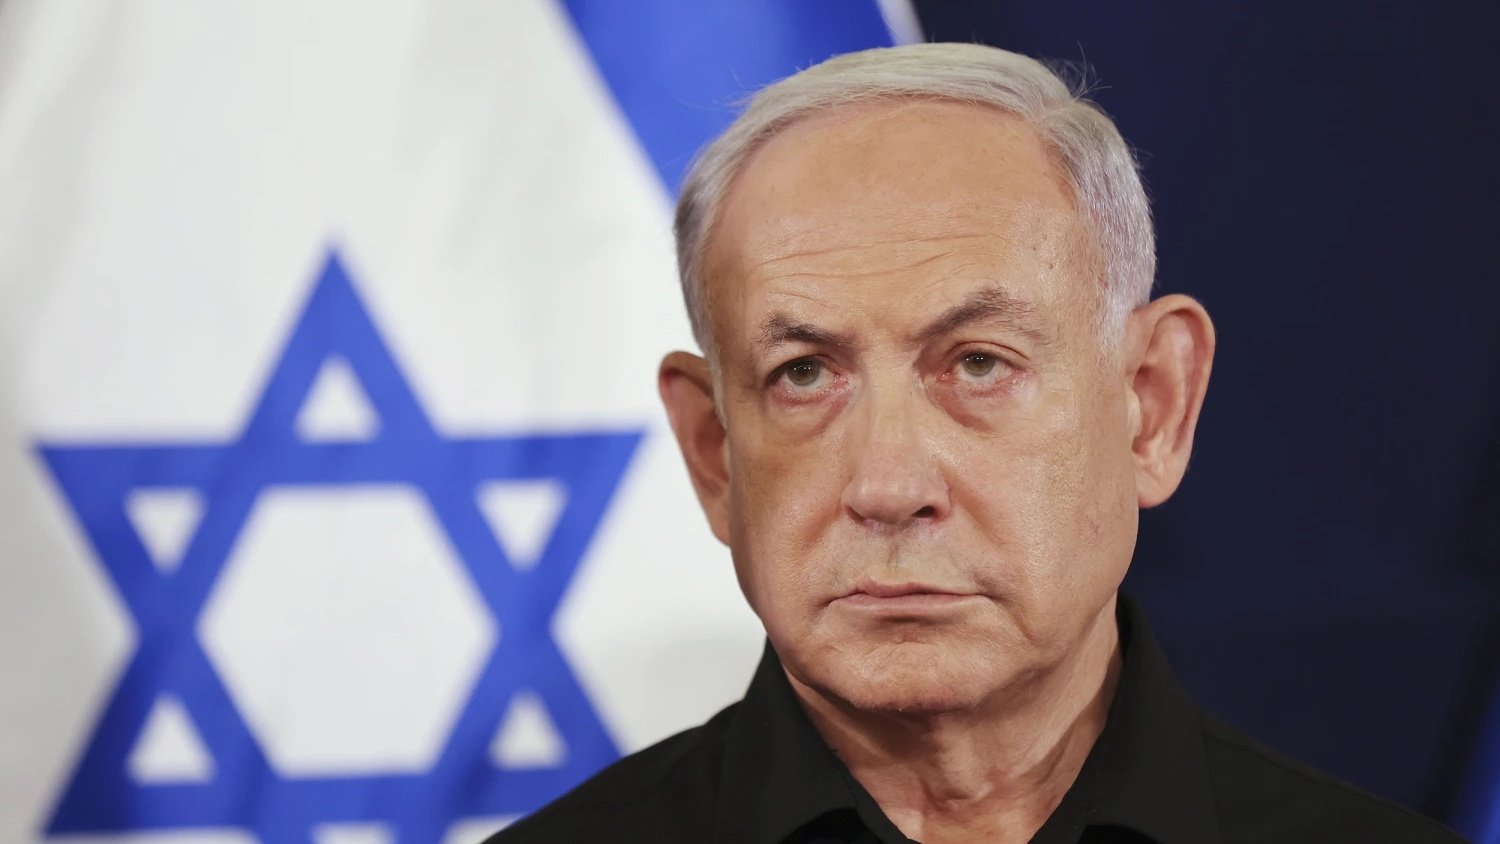 رئيس وزراء اسرائيل بنيامين نتنياهو